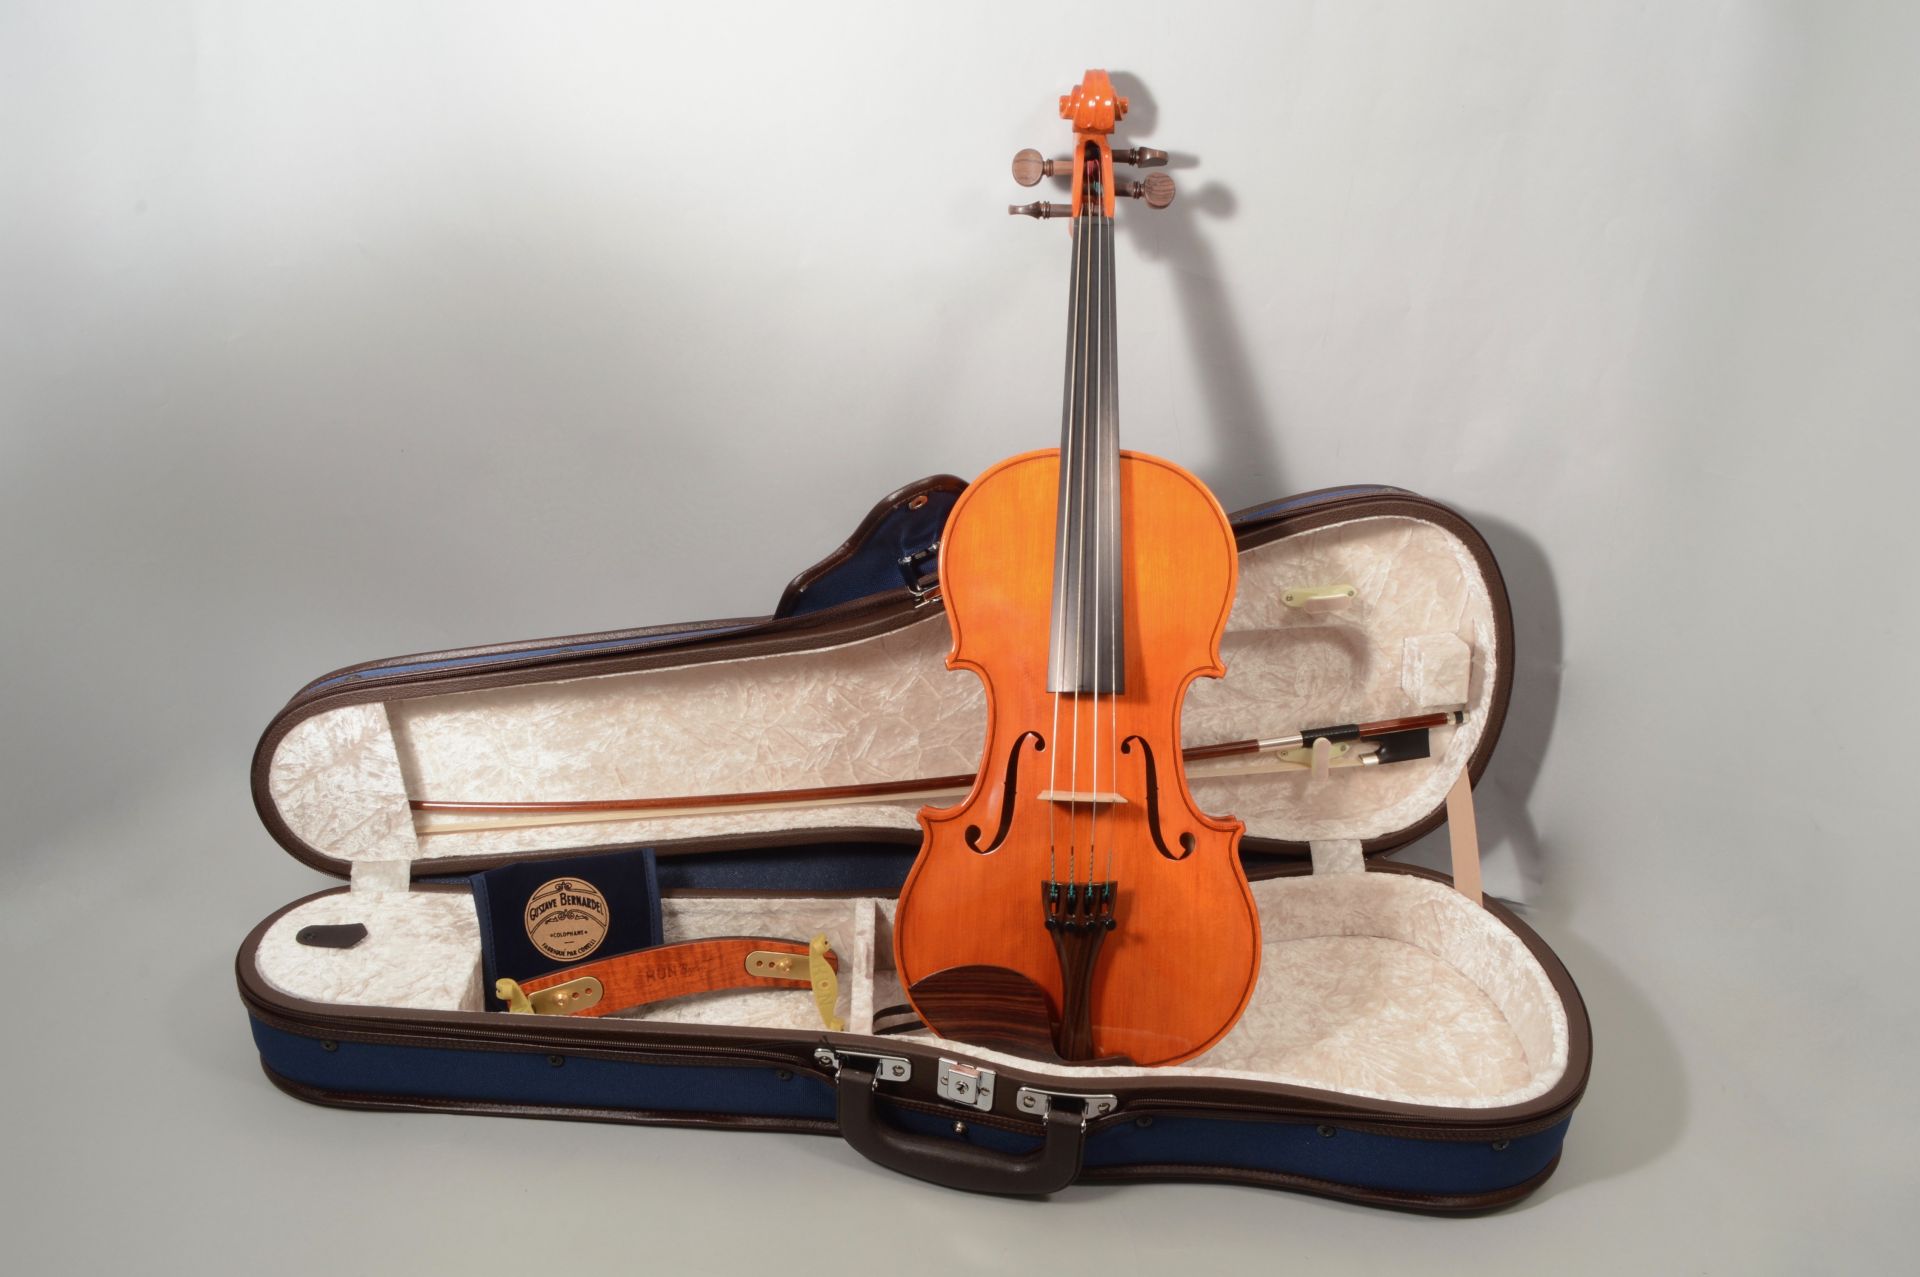 *葉加瀬太郎シグネイチャーモデル「Antonio Tarontino」2018年12月8日（土）新発売！ 日本を代表するヴァイオリニスト：葉加瀬太郎が、これからヴァイオリンをはじめる方に徹底的に寄り添ったバイオリンセットを実現。]]バイオリン本体の木材の選定・板の厚み・ネックの太さから、付属の弓・弦 […]